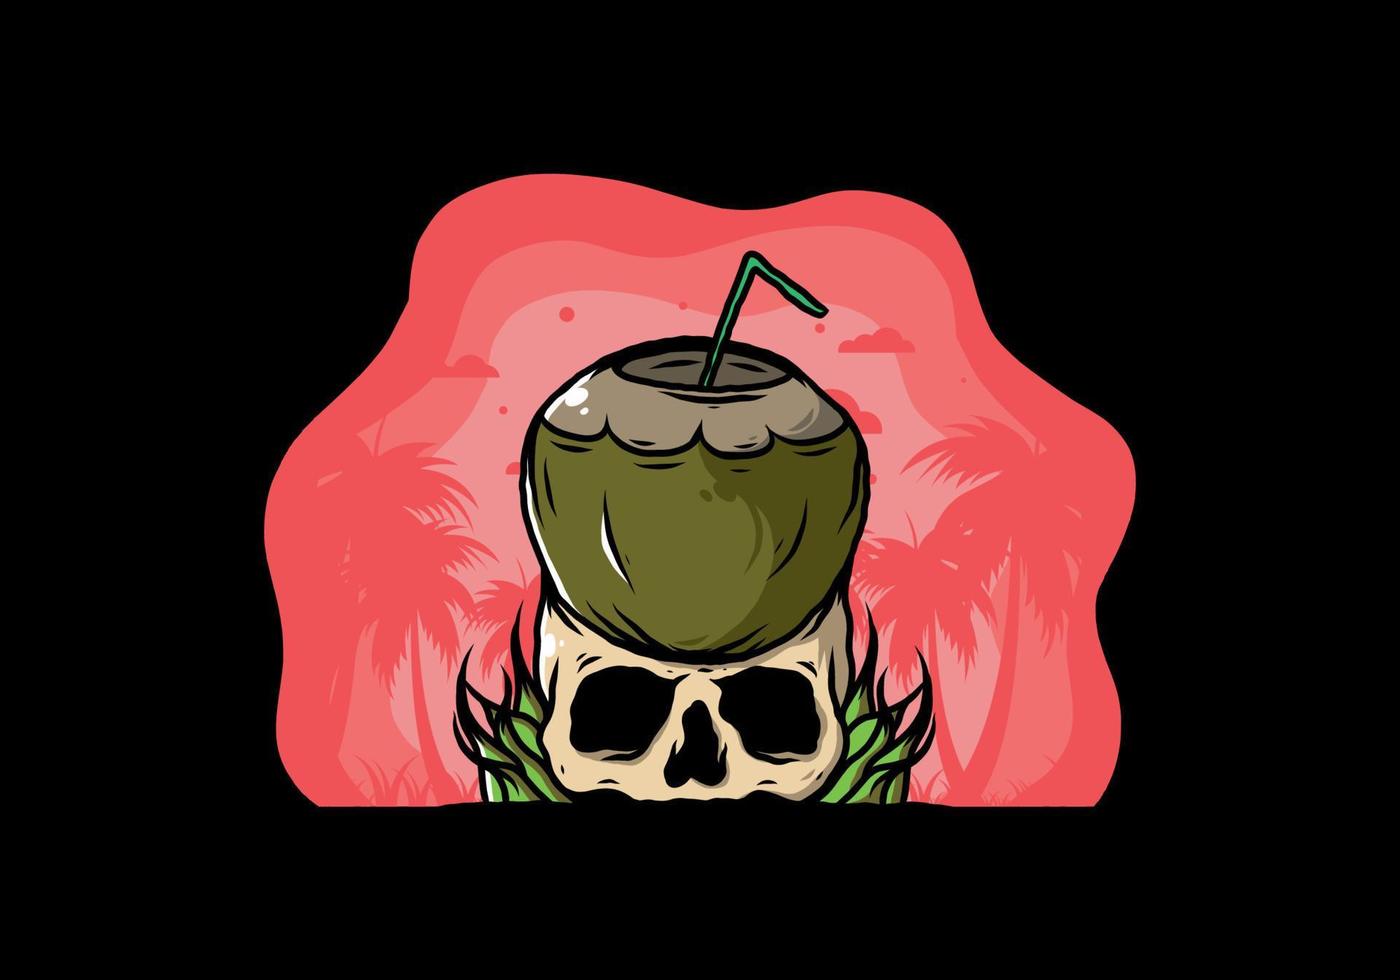 Coconut drink on human skull illustration vector